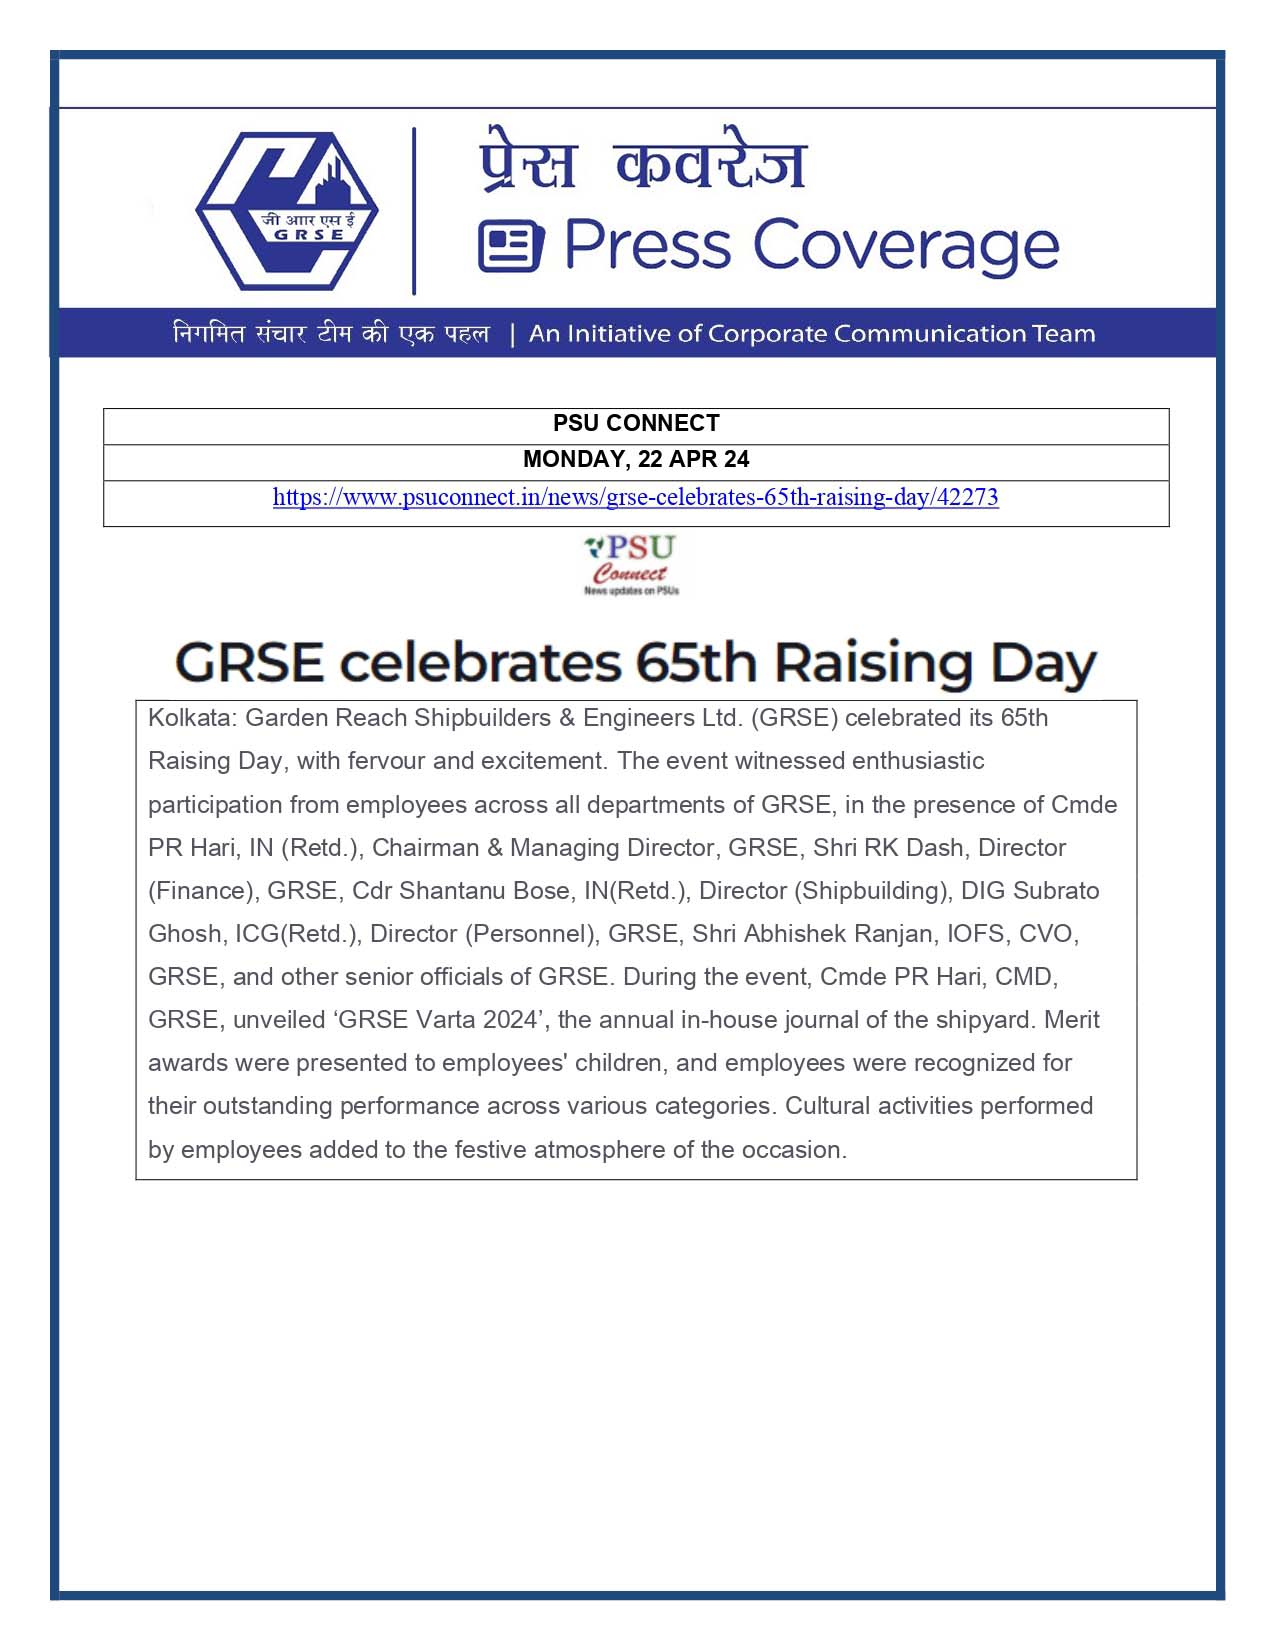 Press Coverage : PSU Connect, 22 Apr 24 : GRSE Celebrates 65th Raising Day